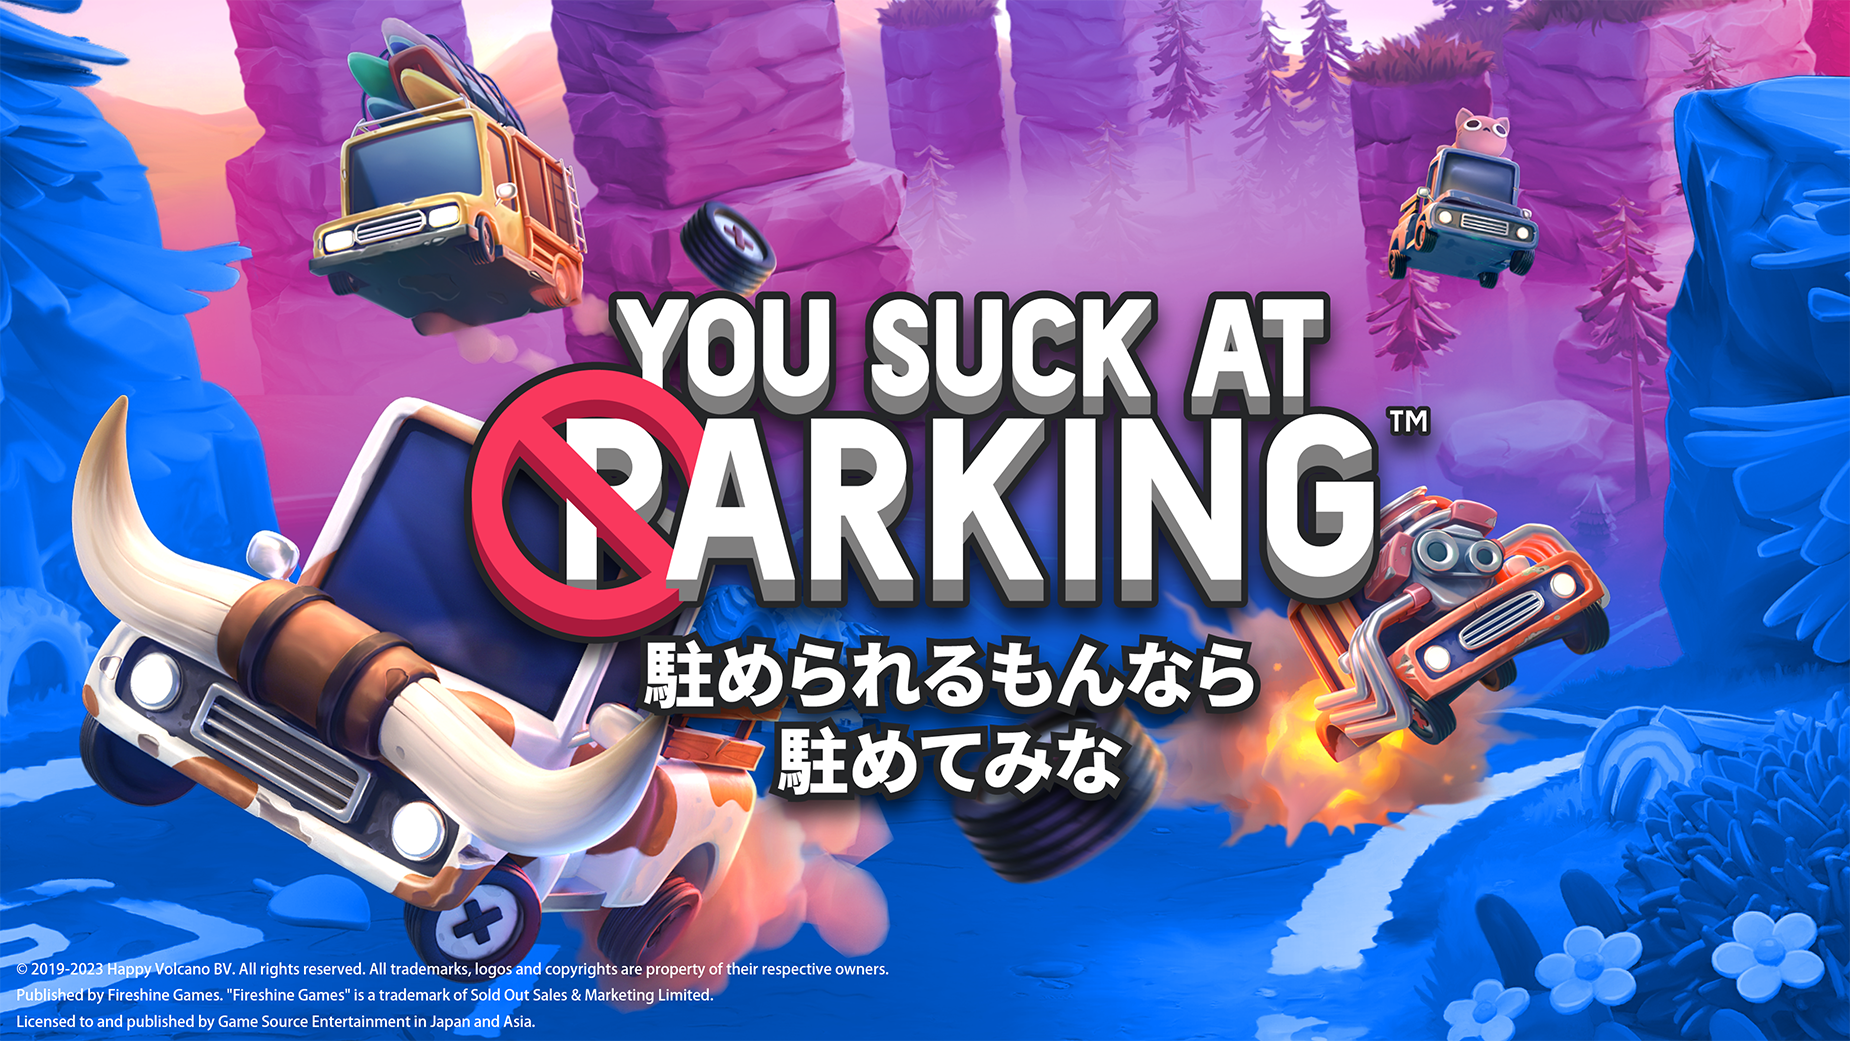 最高にクレイジーな駐車場でブレーキをかけよう！
『駐められるもんなら駐めてみな』の日本語パッケージ版が
PlayStation(R)4、PlayStation(R)5、
Nintendo Switch(TM)で2023年発売決定！